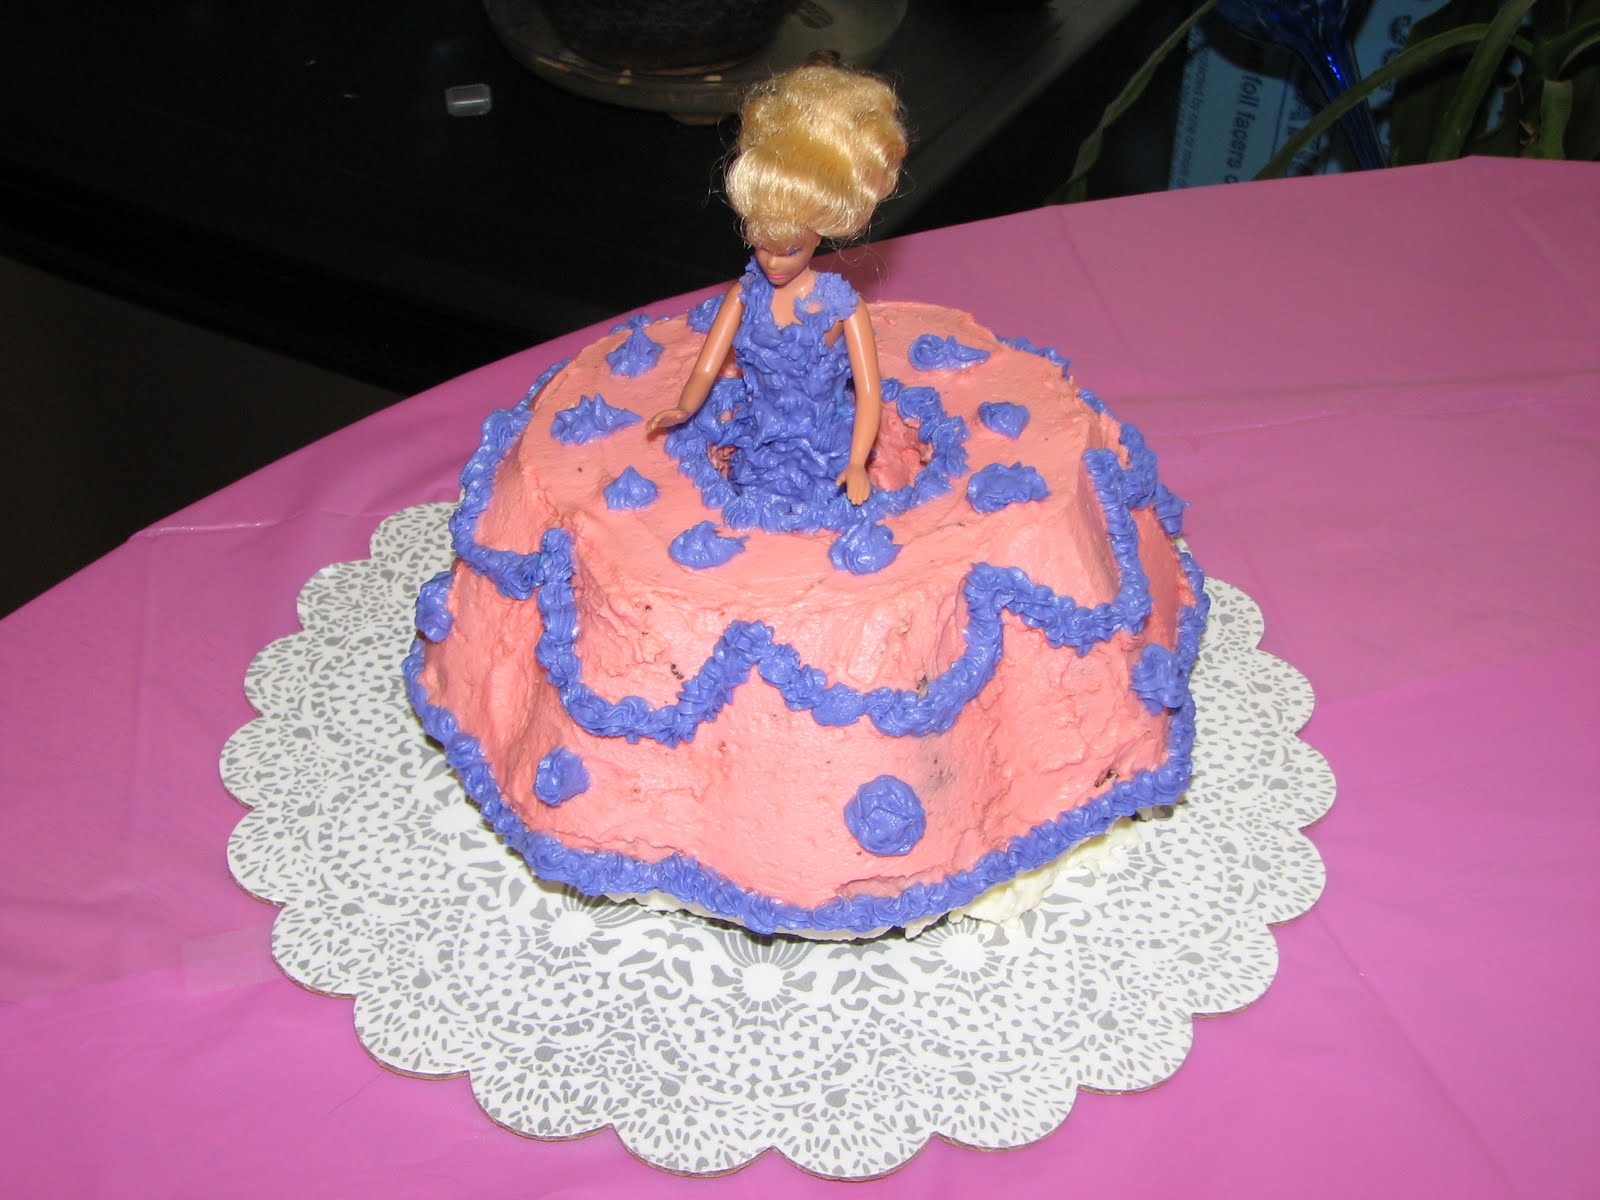 Sam's Club Birthday Cake Princess